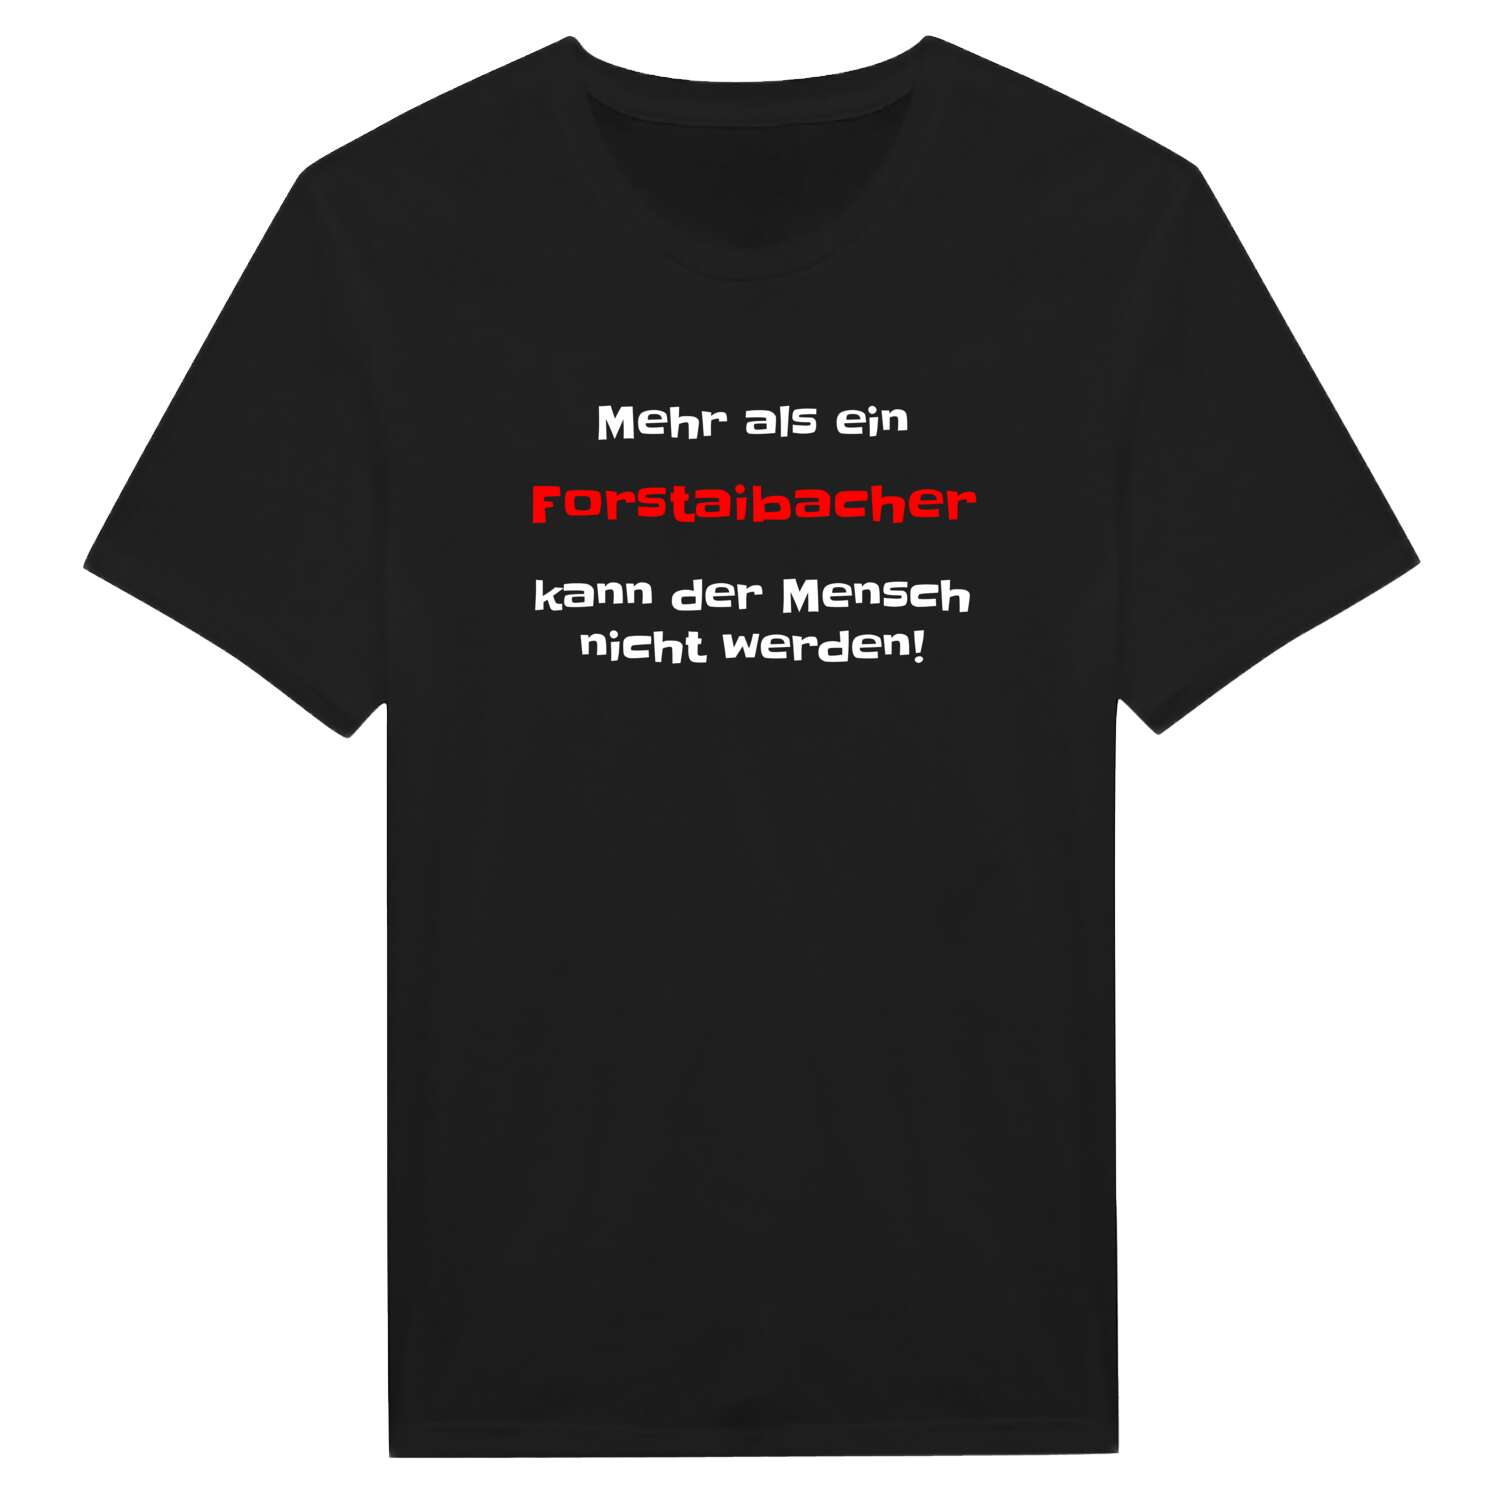 Forstaibach T-Shirt »Mehr als ein«